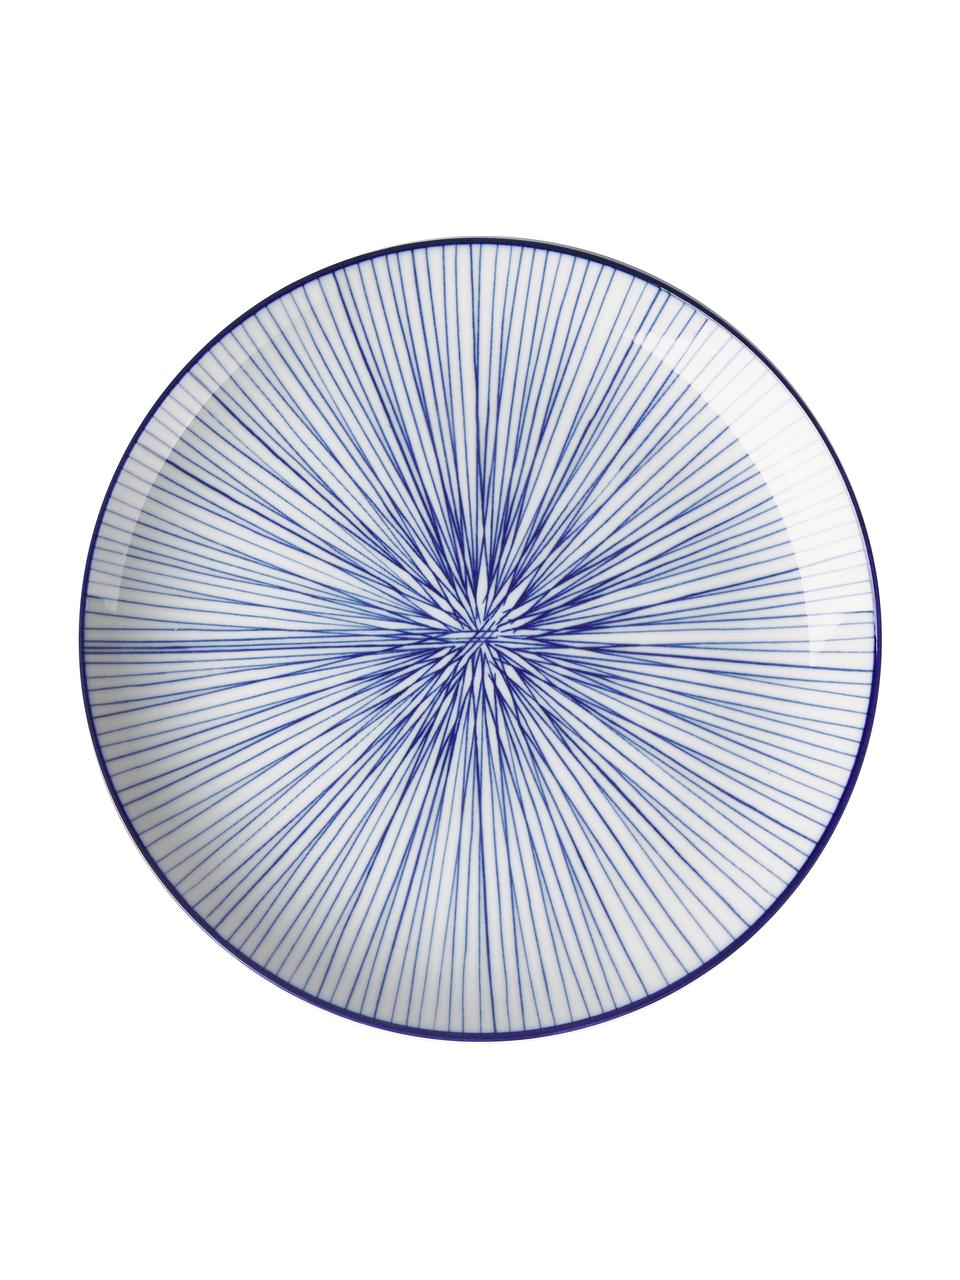 Handgemaakte porseleinen dinerbord Nippon in blauw/wit, set van 4, Porselein, Blauw, wit, Ø 26 cm